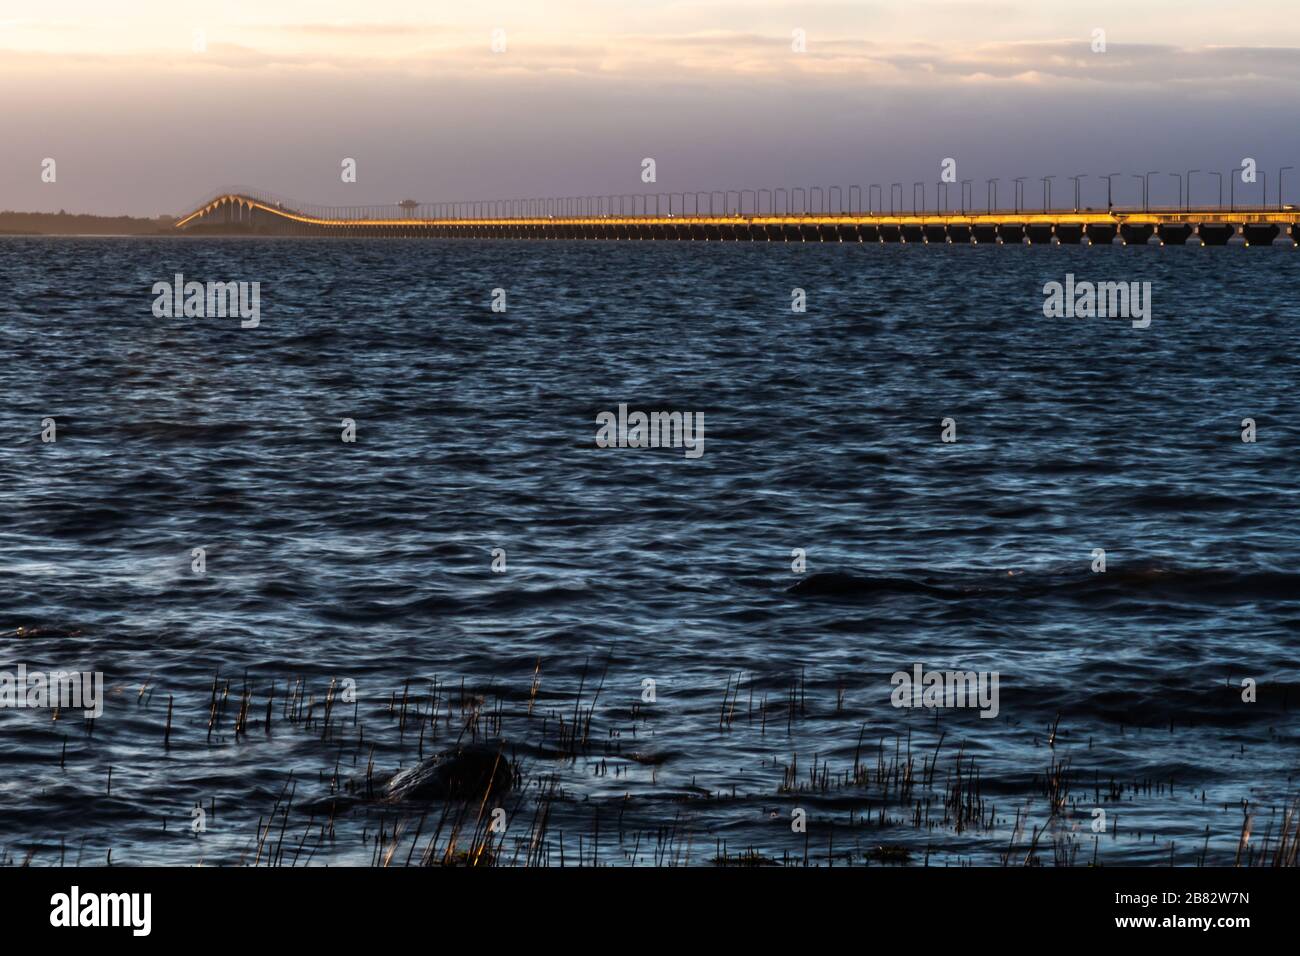 Puente de color dorado - el puente Oland que conecta la isla Oland con la parte continental de Suecia Foto de stock